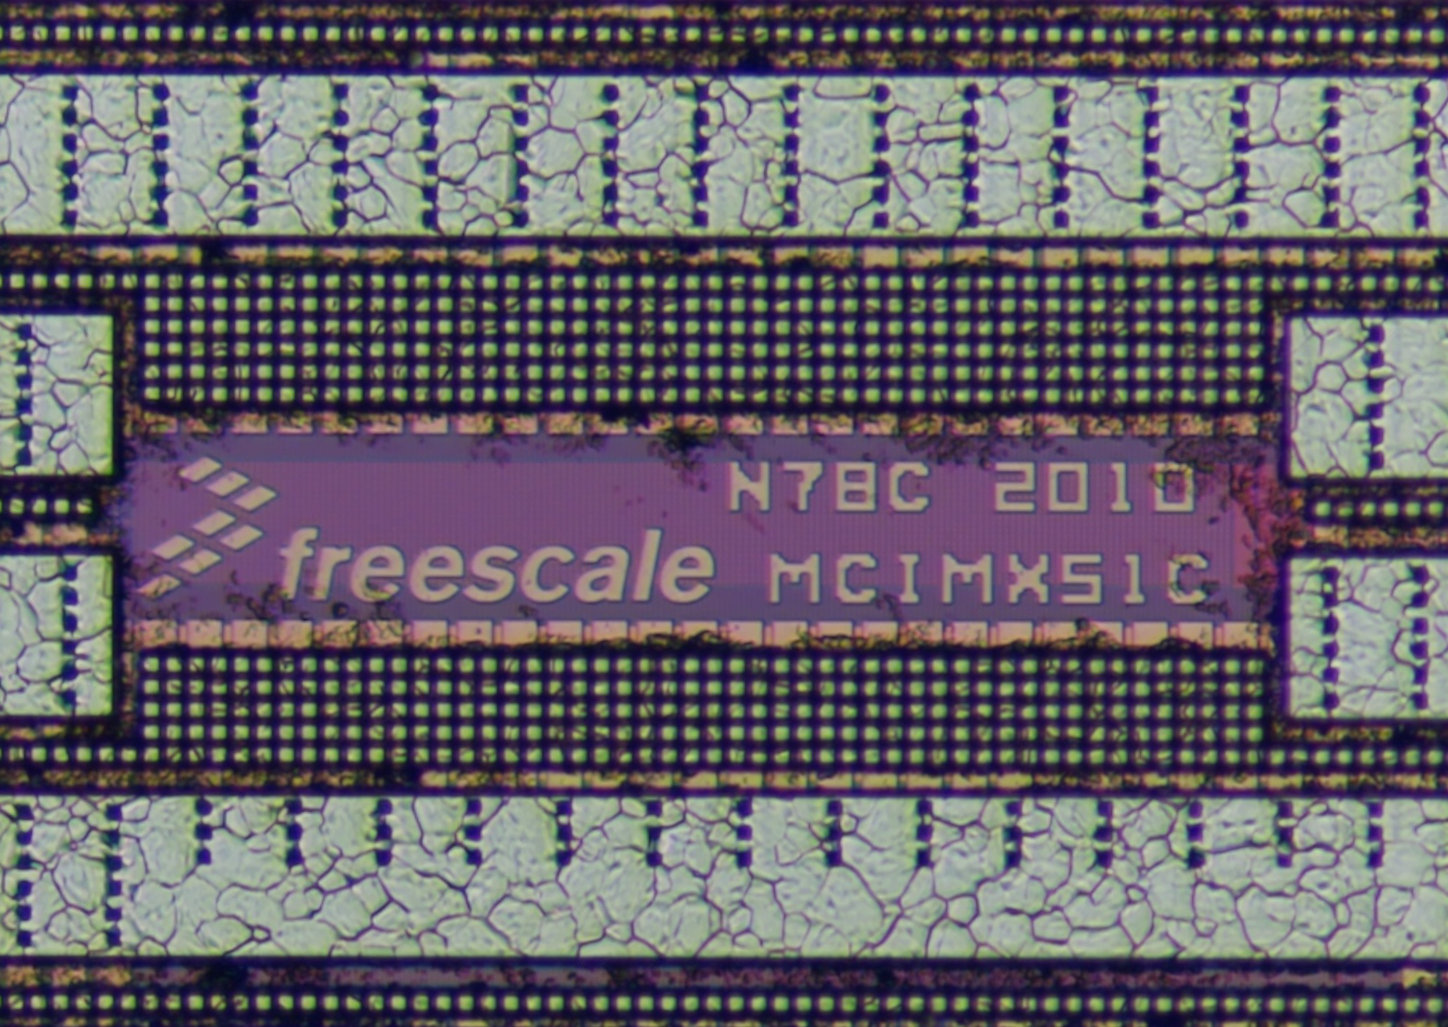 freescale_mcimx51c_mz_nikon20x_logo.jpg